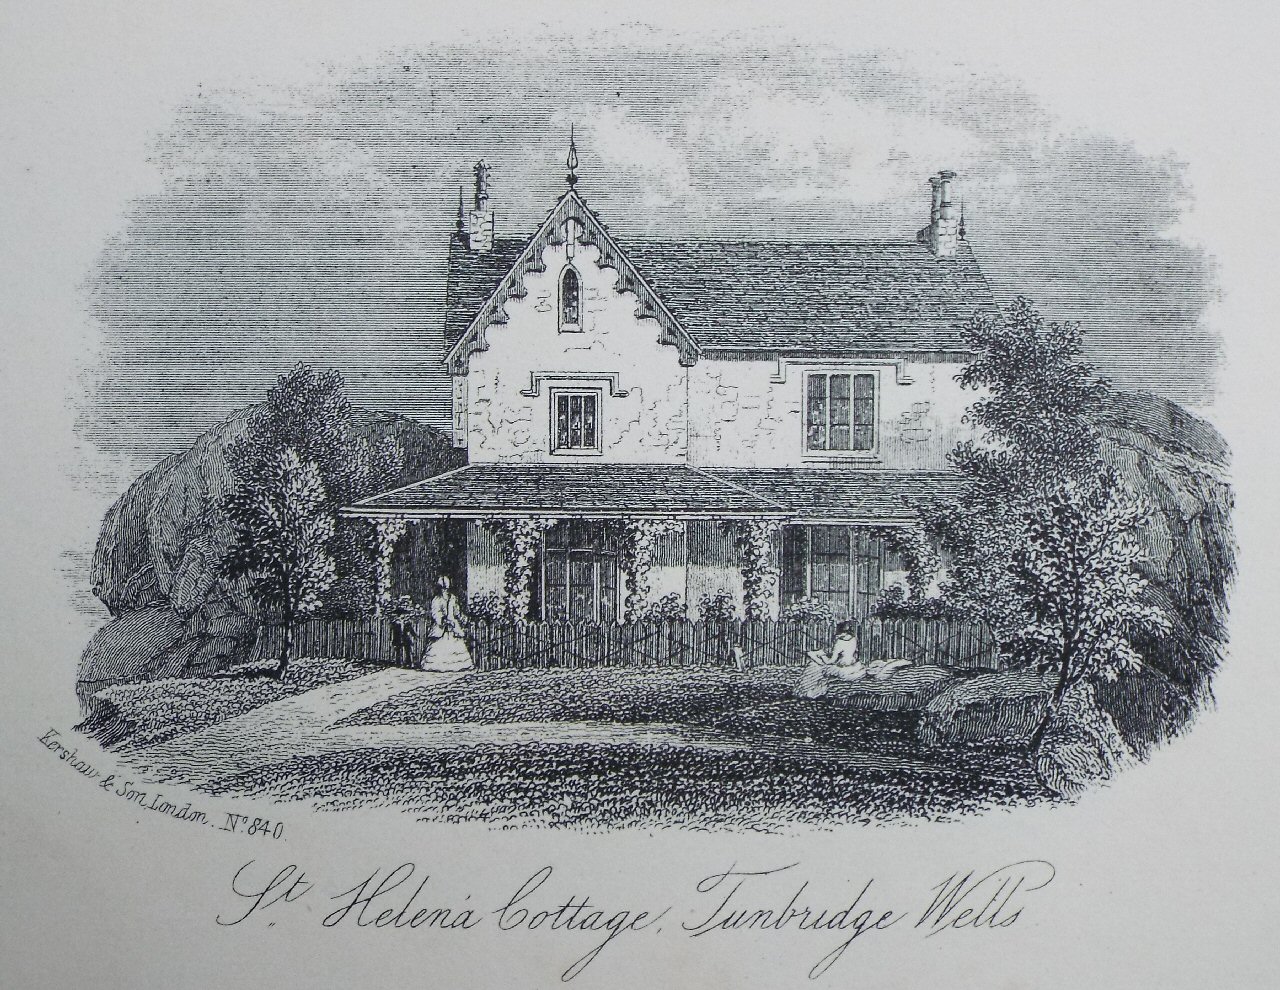 Steel Vignette - St. Helena Cottage, Tunbridge Wells - Kershaw